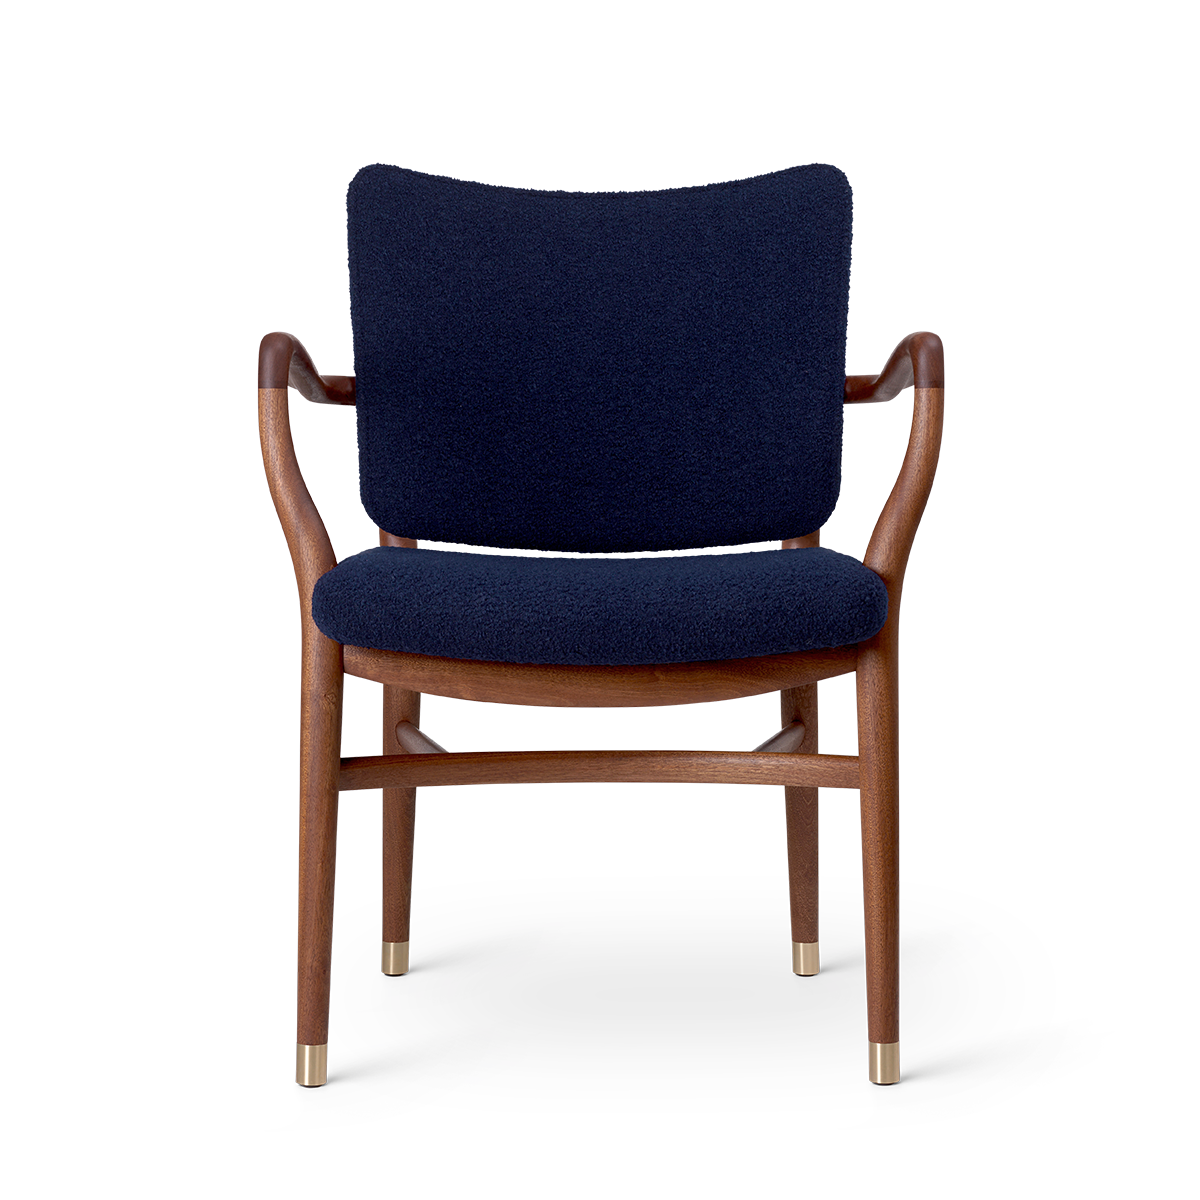 | Lauritzen by Søn Hansen & Monarch Carl Chair VLA61 | Buy designed Vilhelm